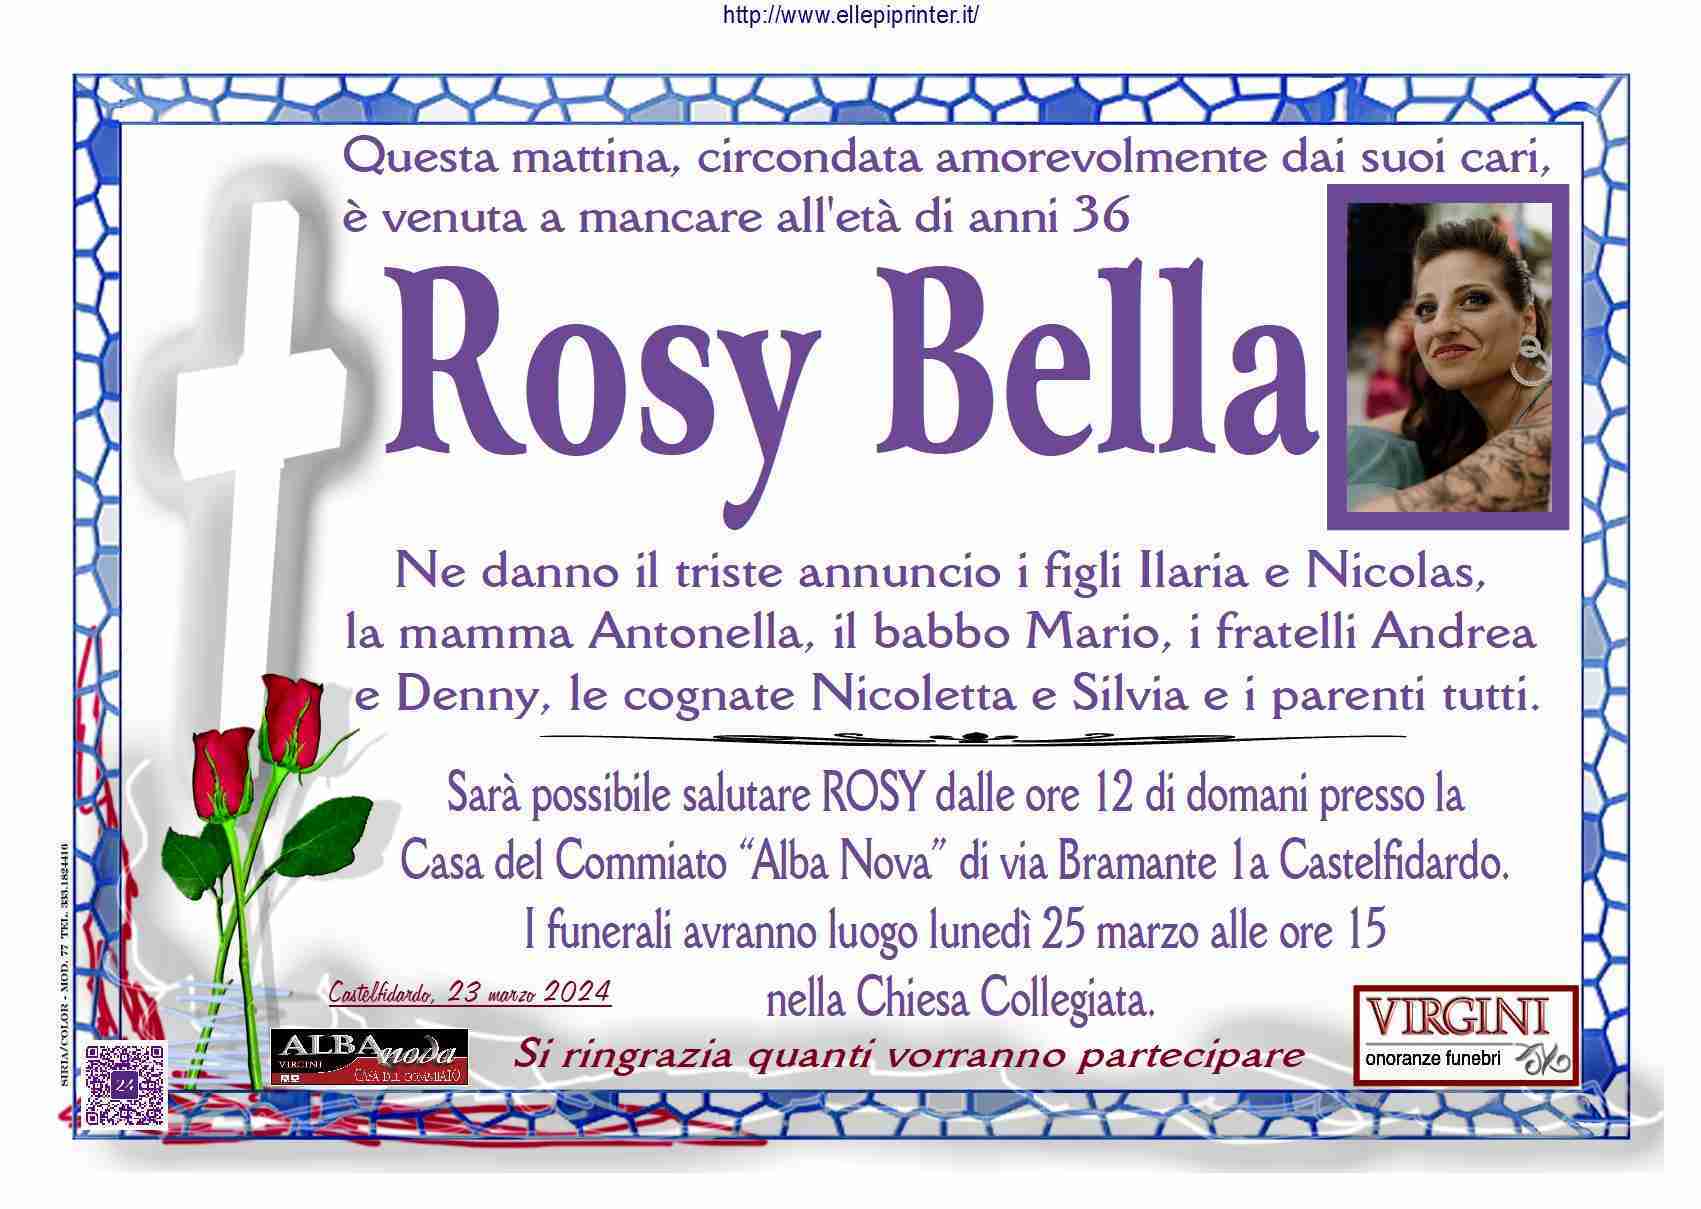 Rosamaria Bella